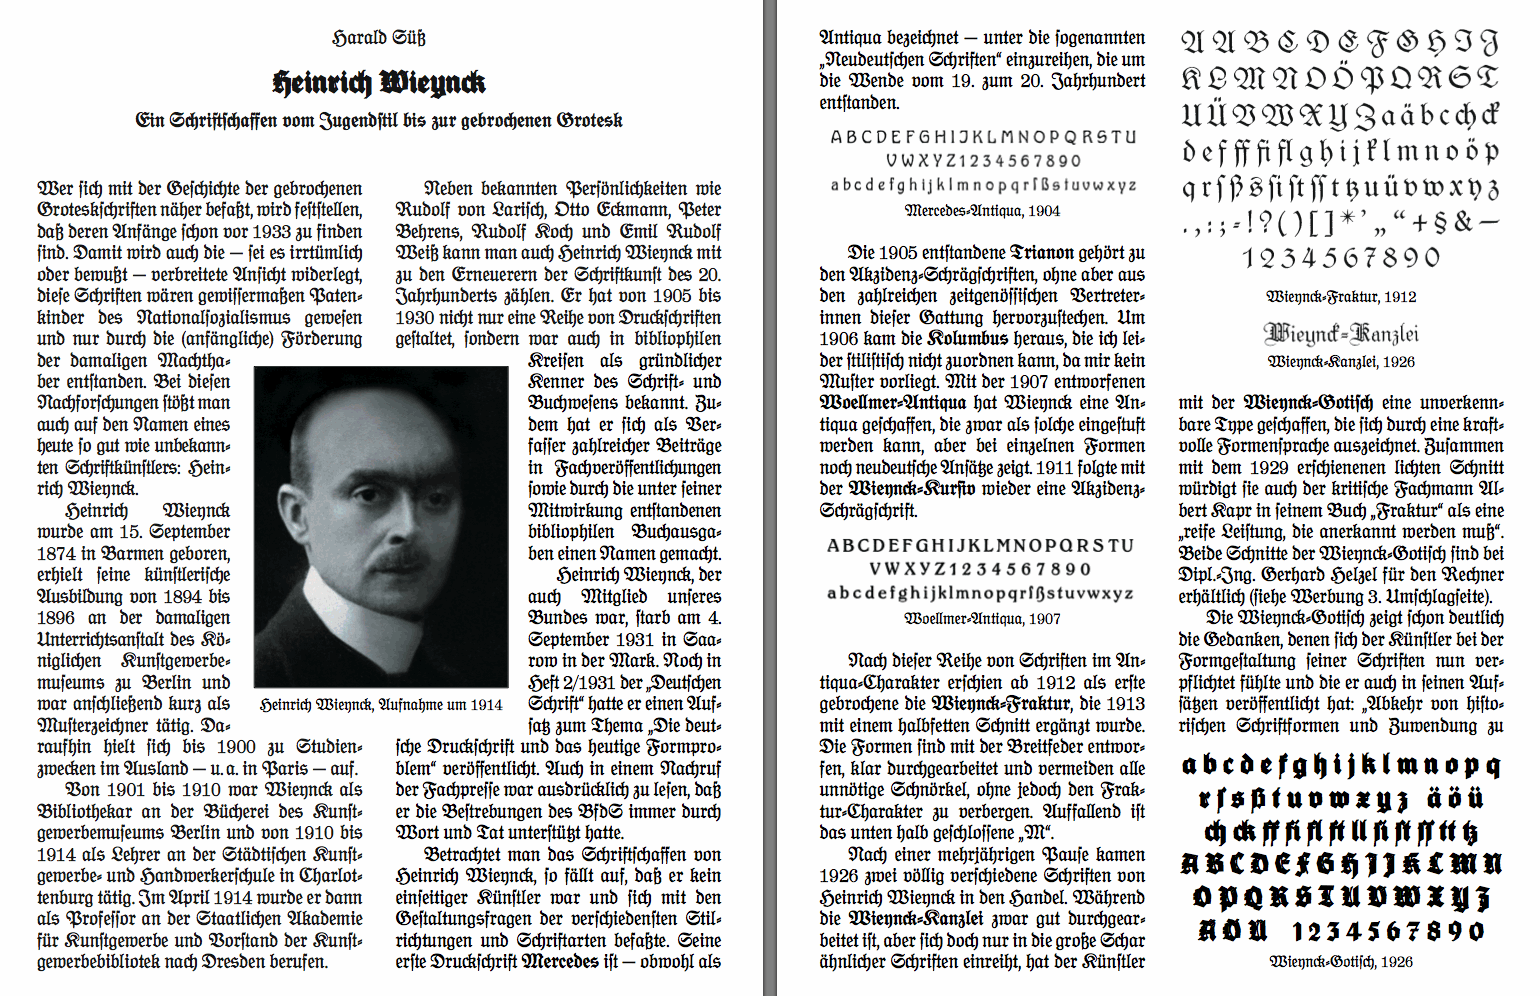  - HeinrichWieynck-Biography-ByHaraldSuess-Dds2002a